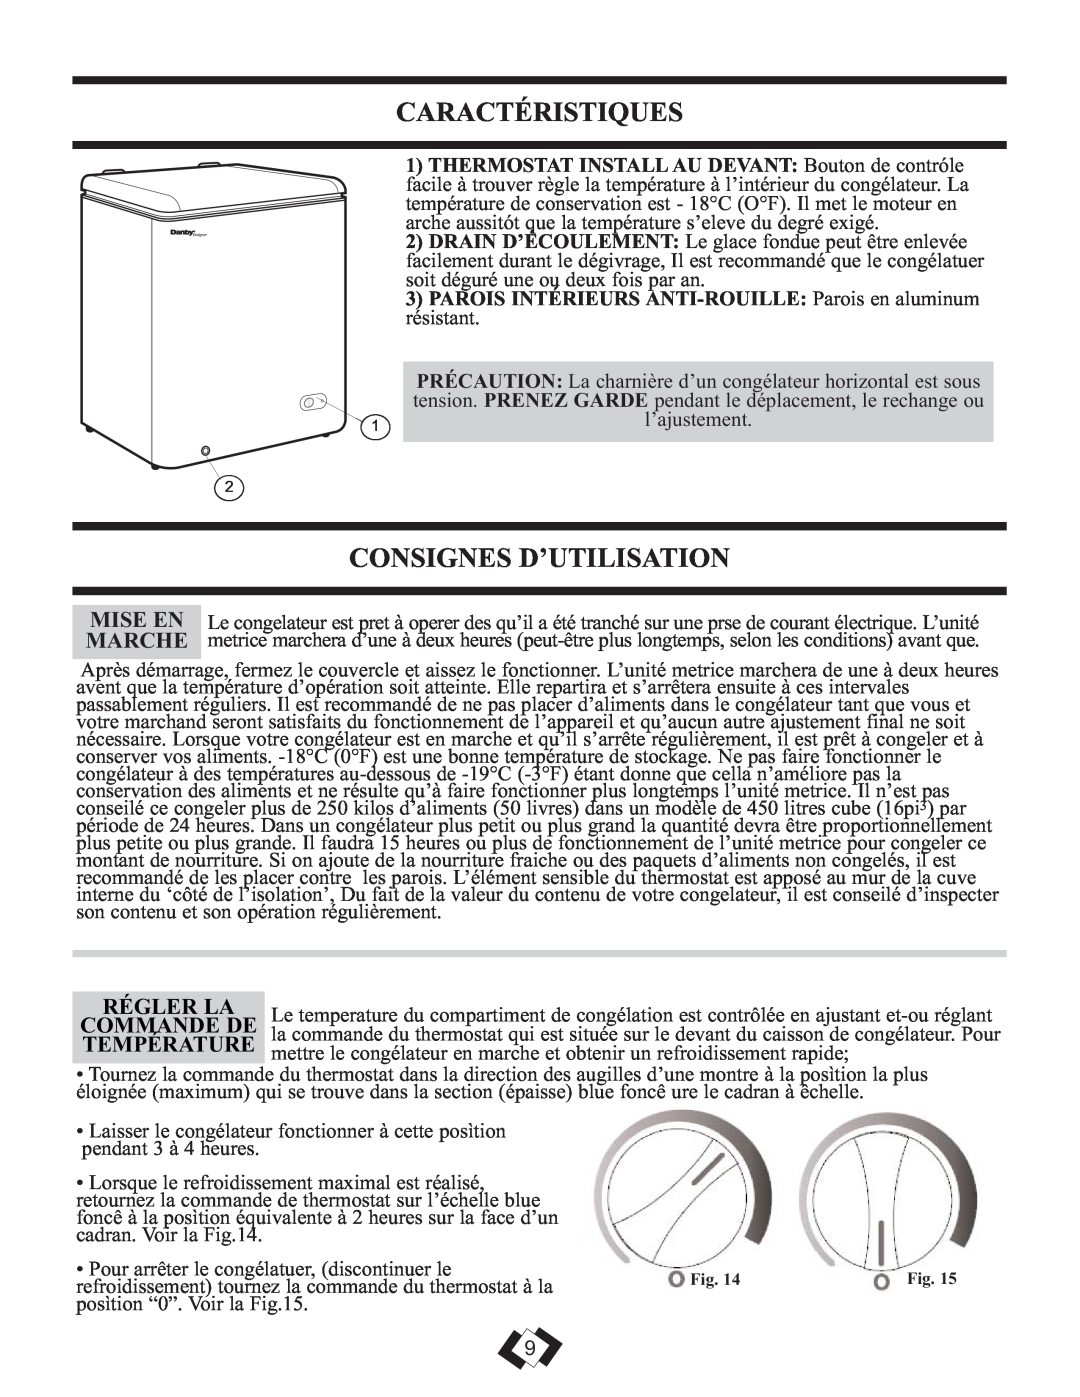 Danby DCFM246WDD manual Caractéristiques, Consignes D’Utilisation, Régler La, Commande De, Température 